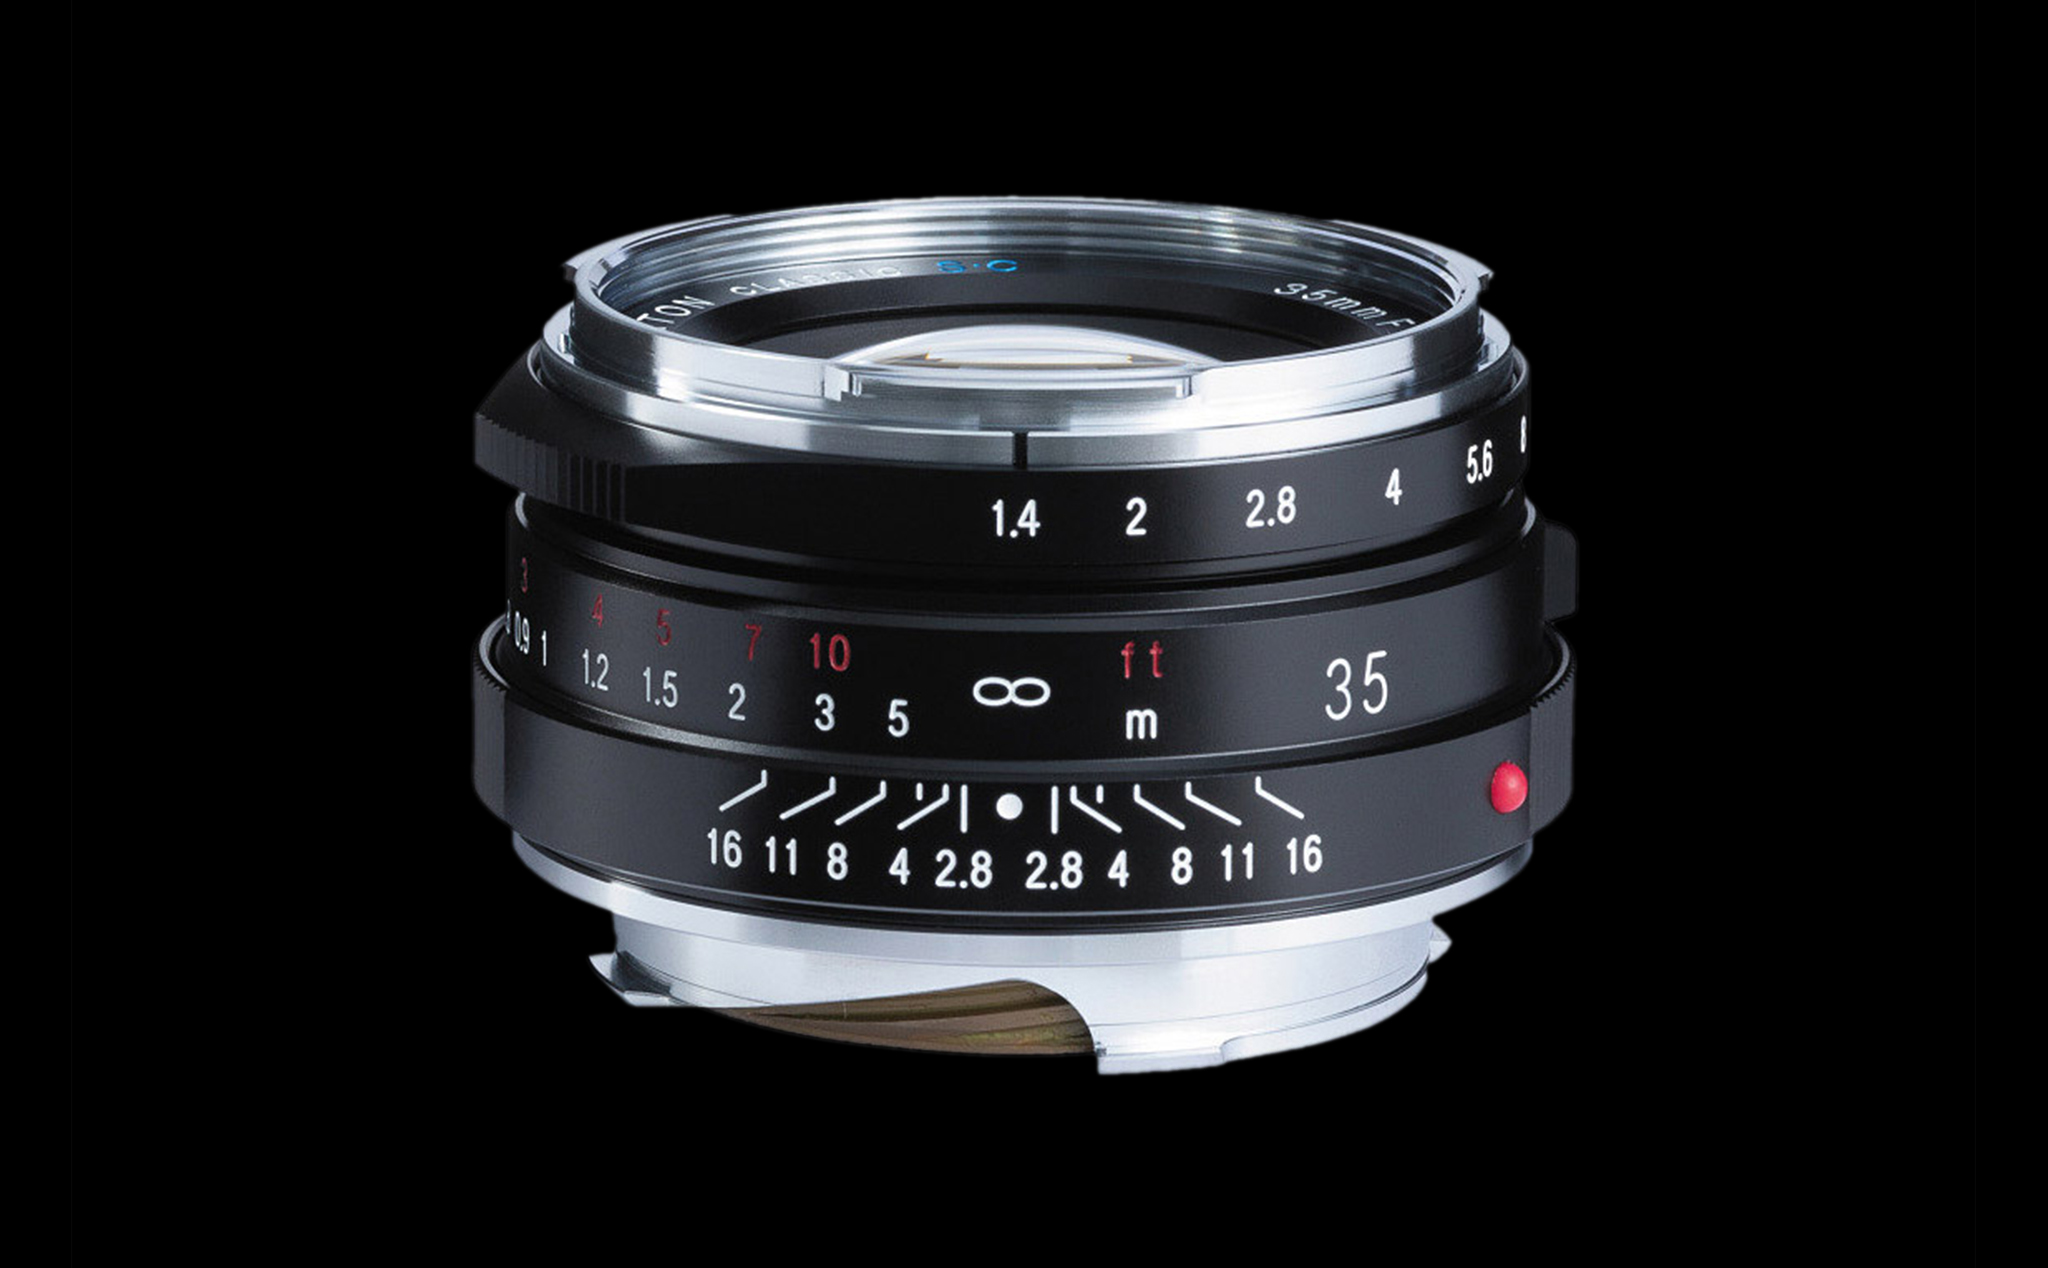 Voigtlander sẽ ra mắt ống kính Nokton Classic 35mm F1.4 II cho Leica ngàm M vào tháng 06/2019